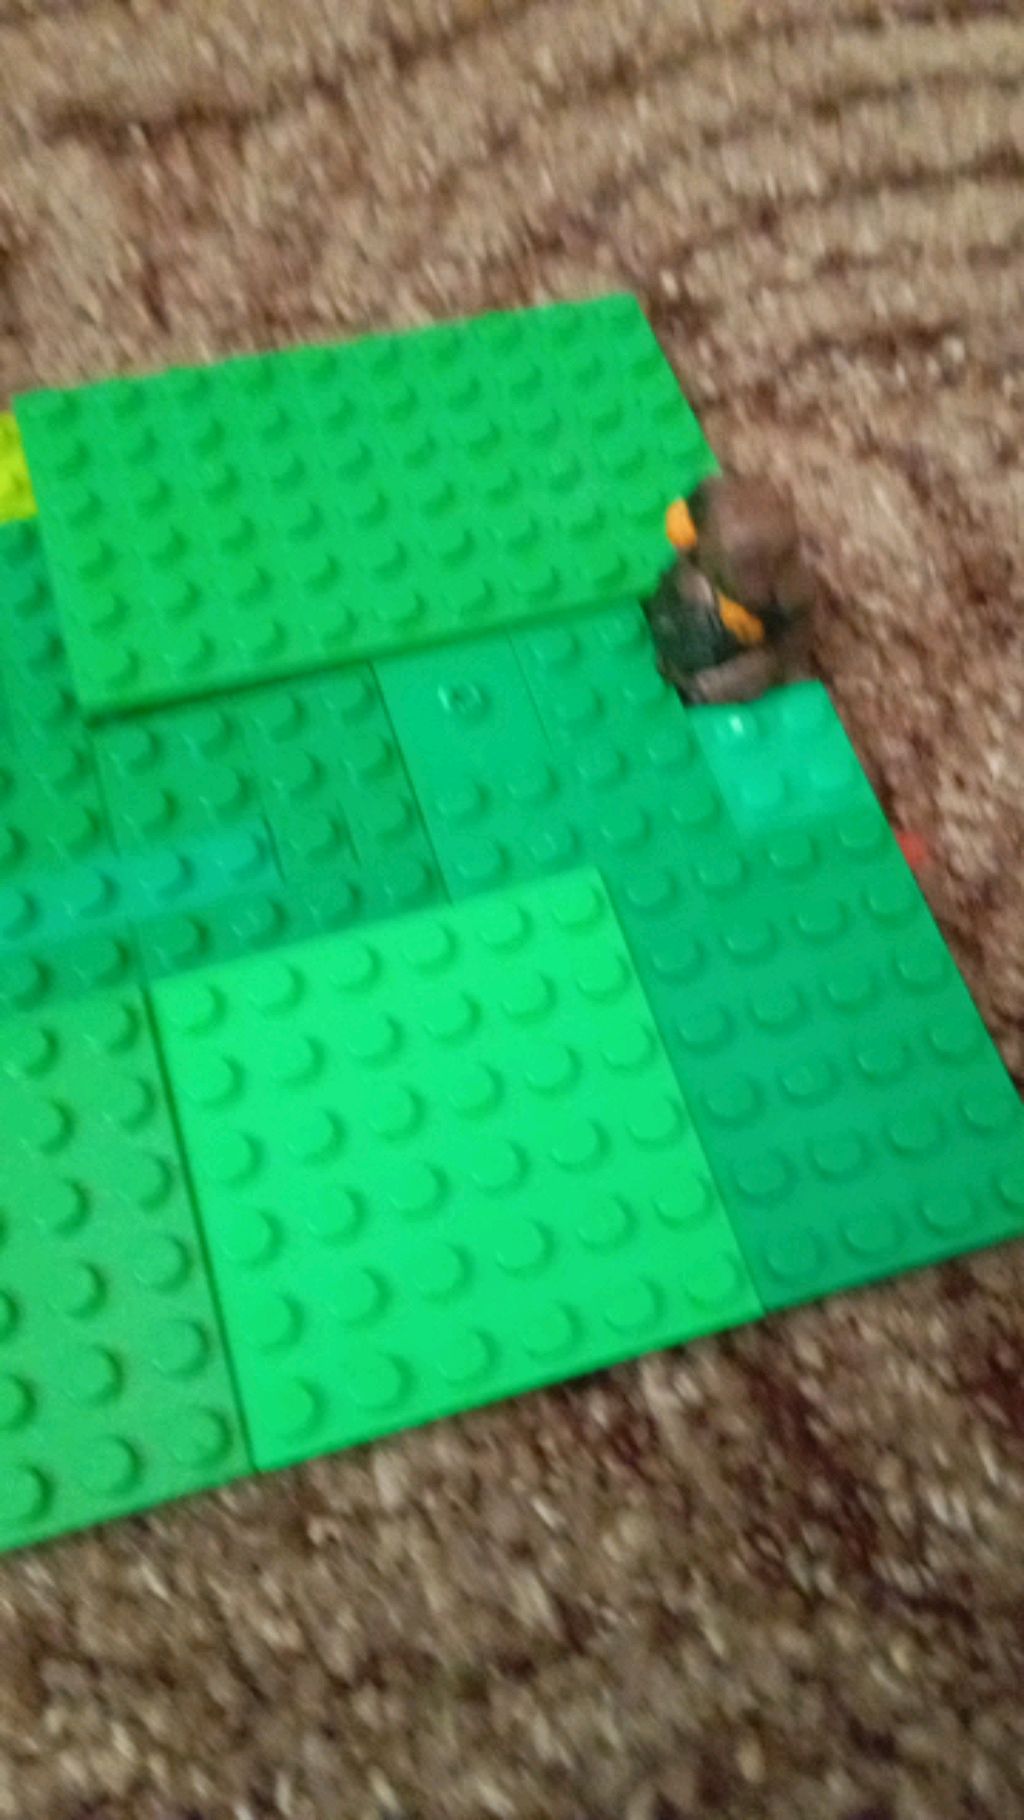 Shadow Freddy fazbear Lego